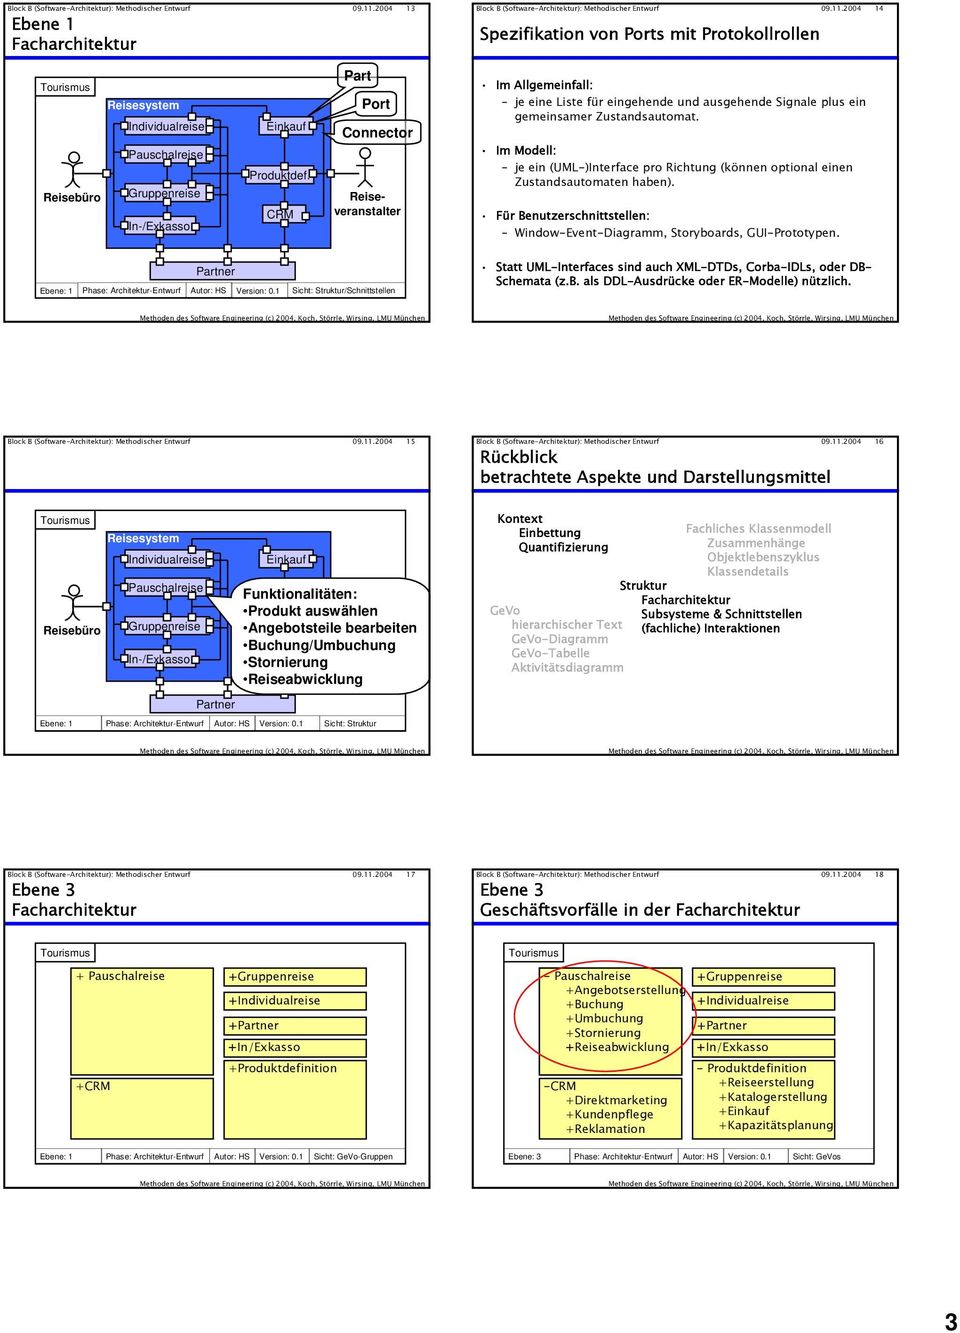 Im Modell: je ein (UML-)Interface pro Richtung (können optional einen Zustandsautomaten haben). Für Benutzerschnittstellen: Window-Event-Diagramm, Storyboards, GUI-Prototypen.